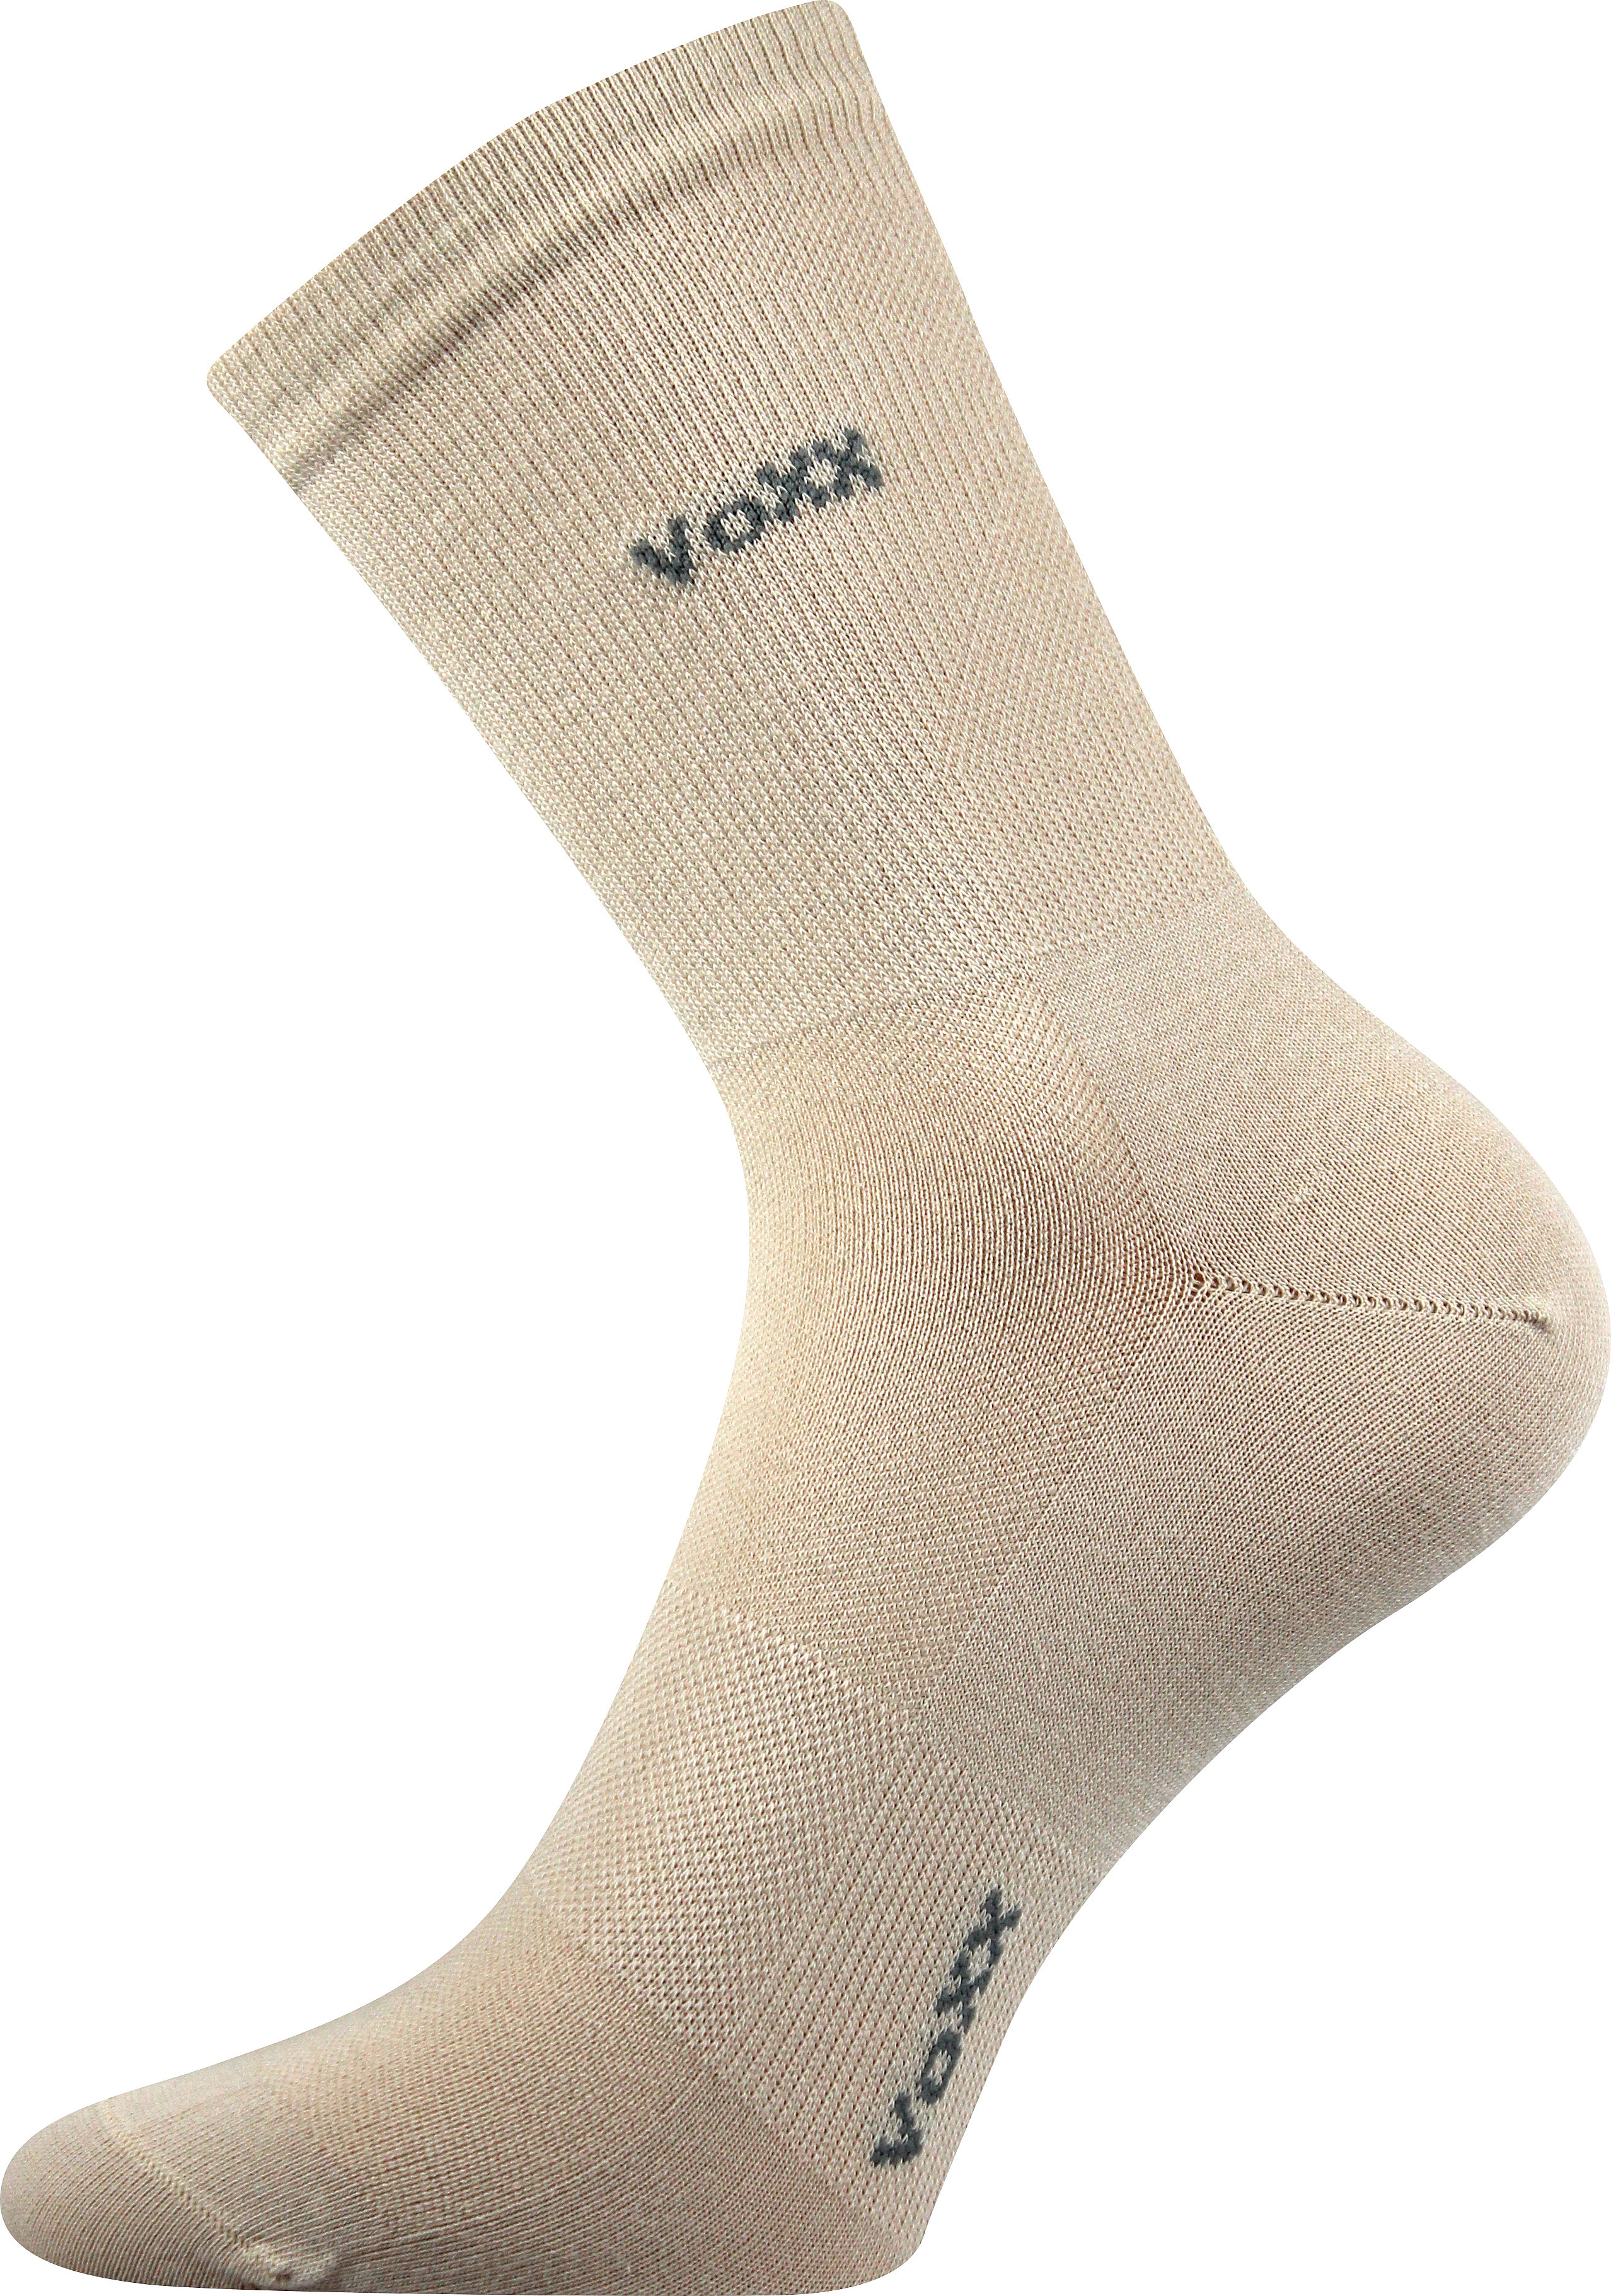 Ponožky sportovní Voxx Horizon - béžové, 43-46